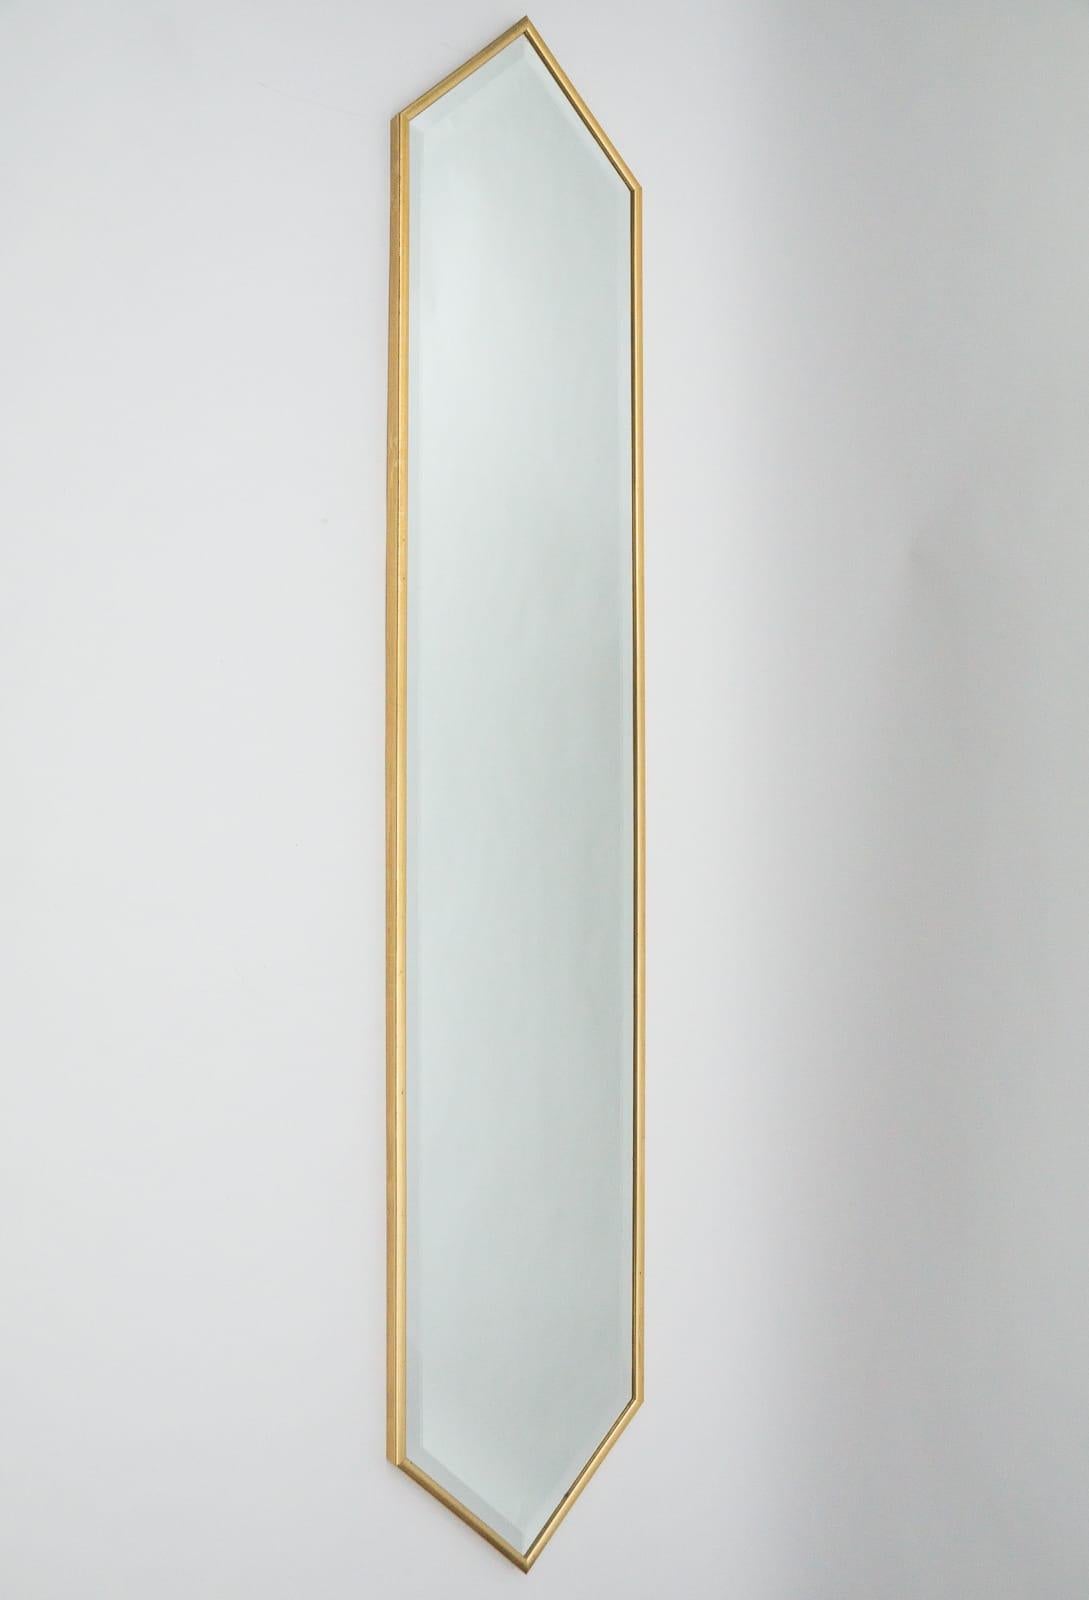 Vous proposez ici trois miroirs de taille égale, beaux et élégants, de forme onirique et d'une hauteur de 198 cm.

Les miroirs sont rectifiés, tout autour.